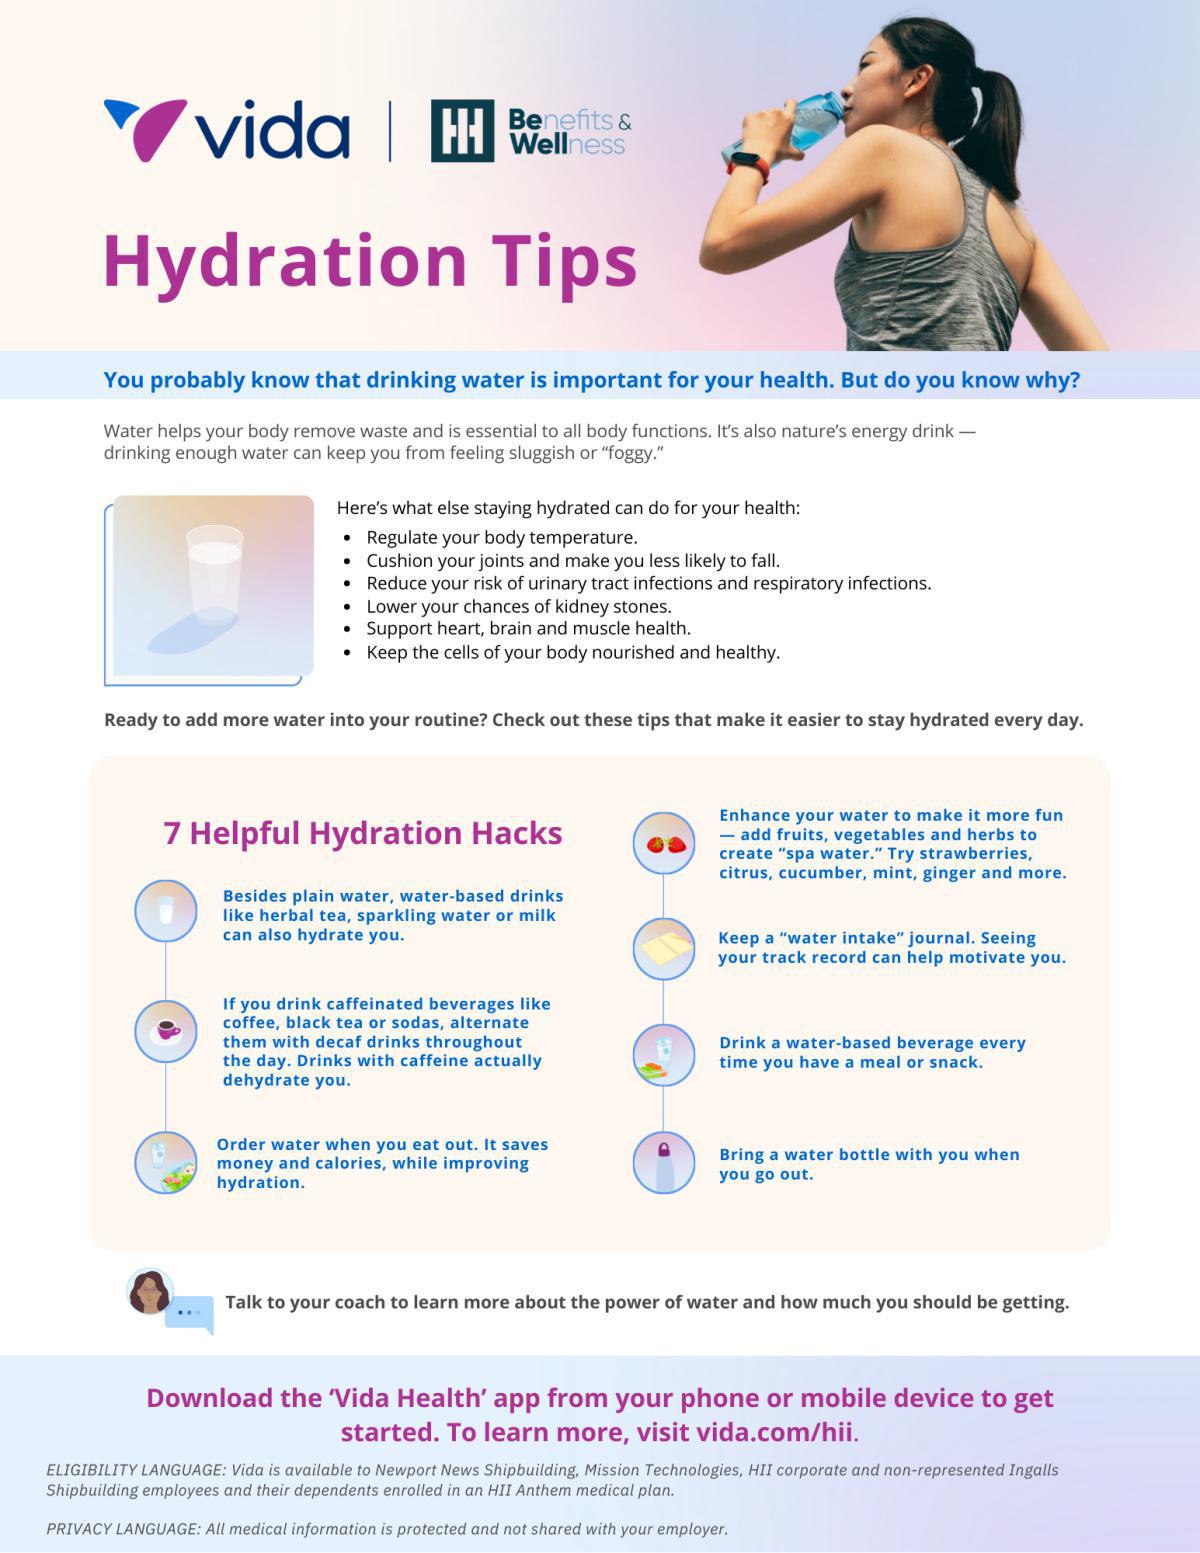 Hydration Tips From Vida Health